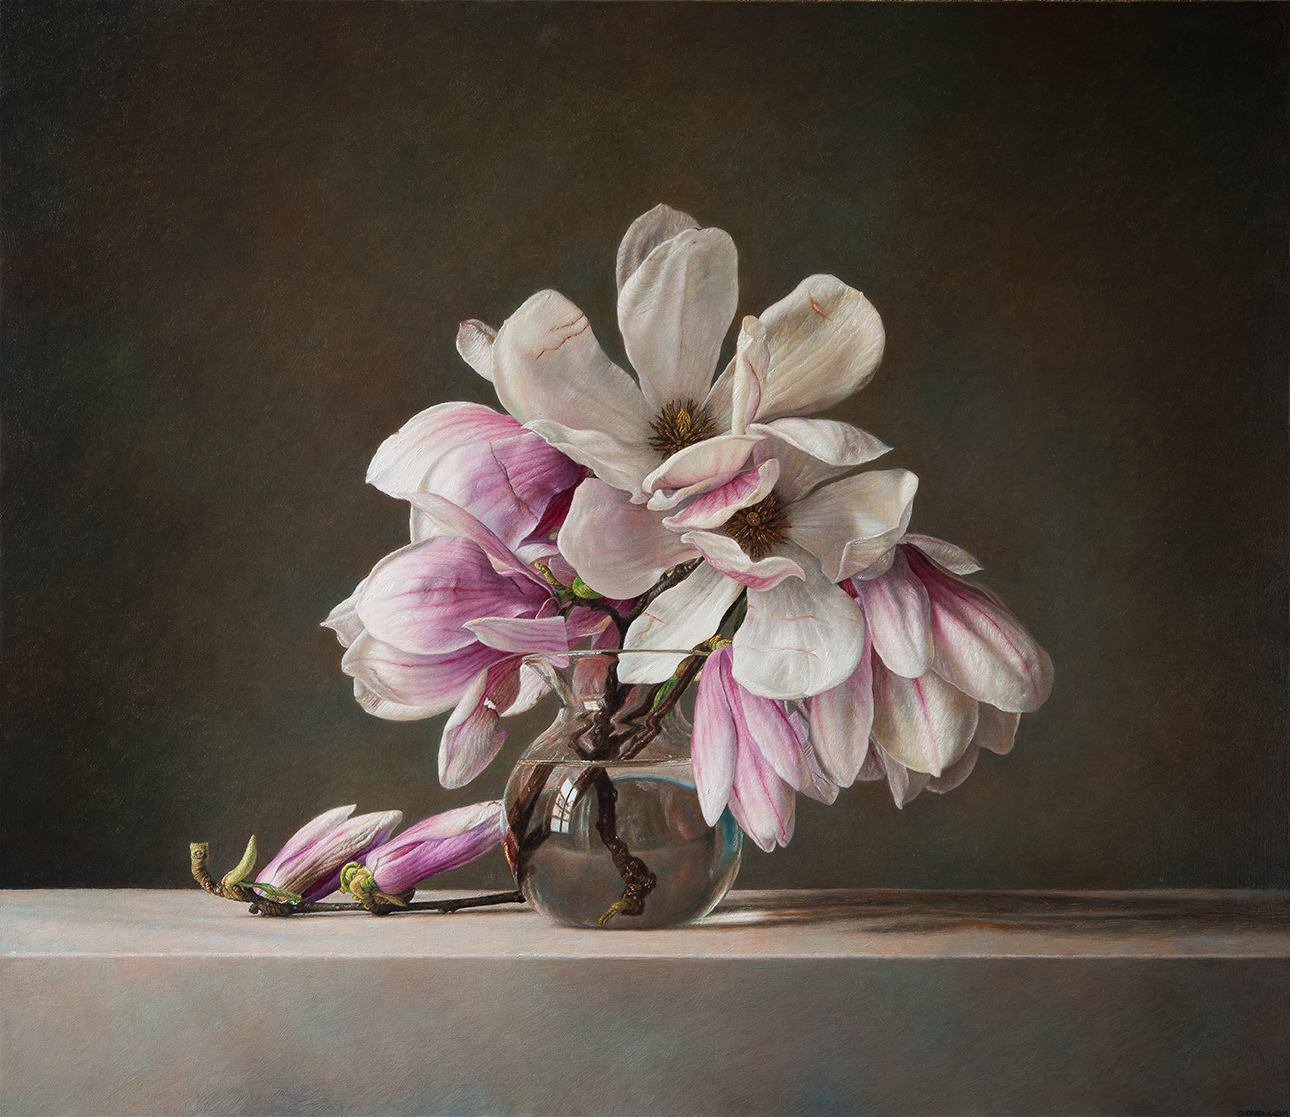 Magnolias - 2019 olio su tela cm 65x75 © Gianluca Corona